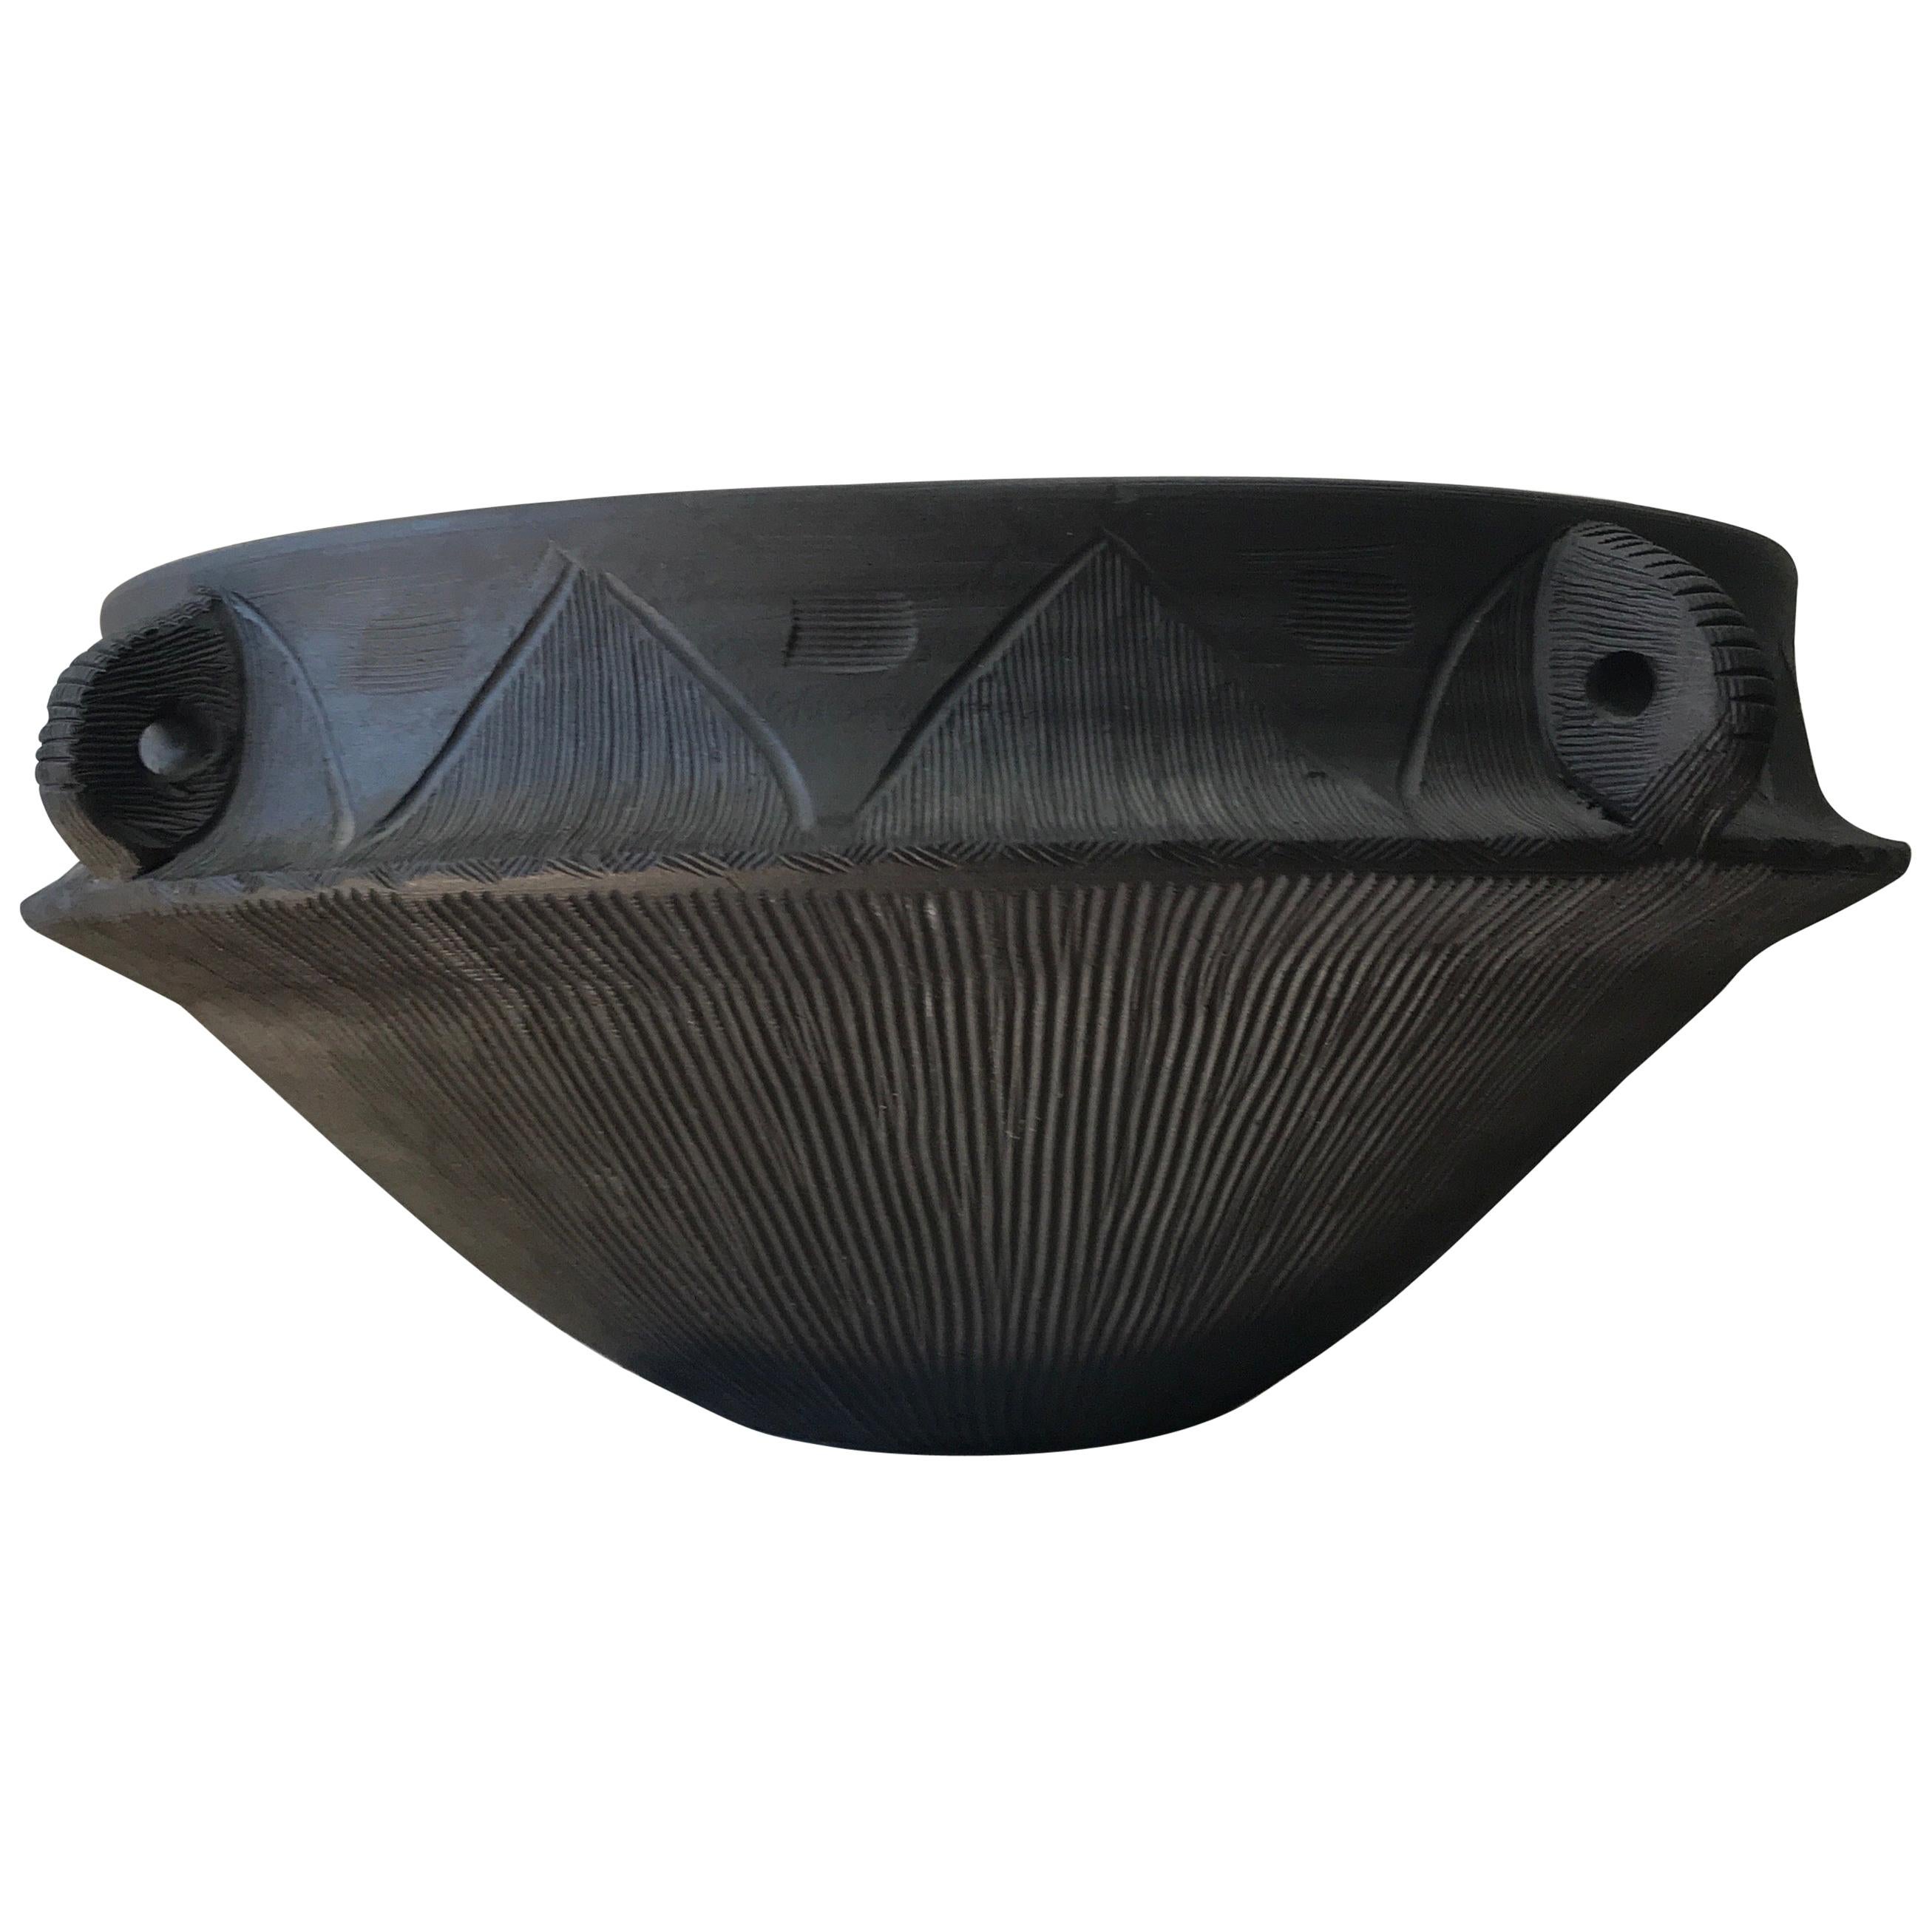 Large Ceramic Black Matte Midcentury Bowl